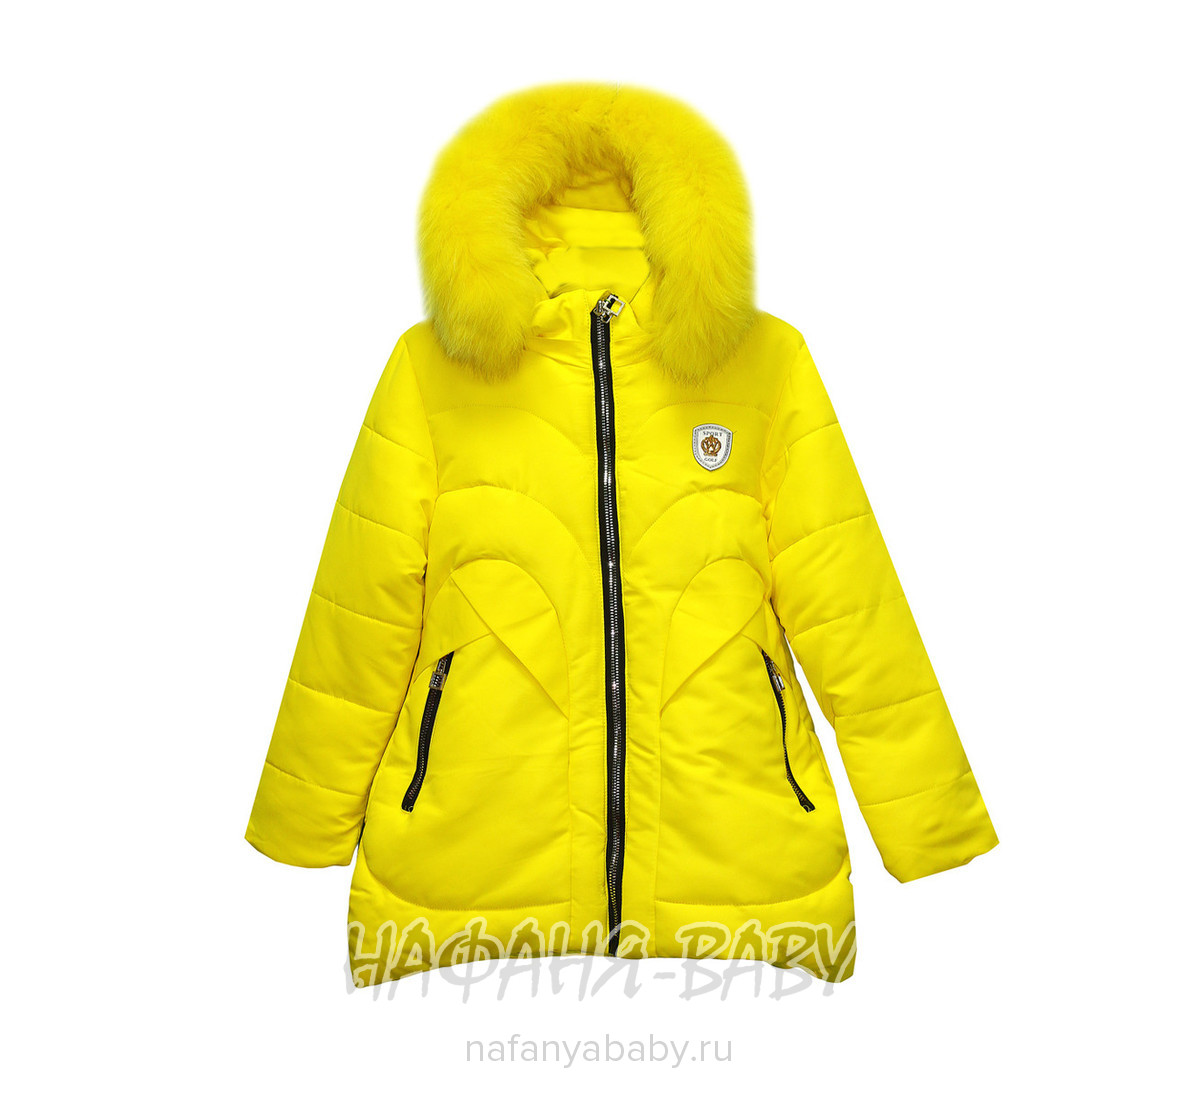 Детская зимняя куртка для девочки WIRX IZZY, купить в интернет магазине Нафаня. арт: 989.